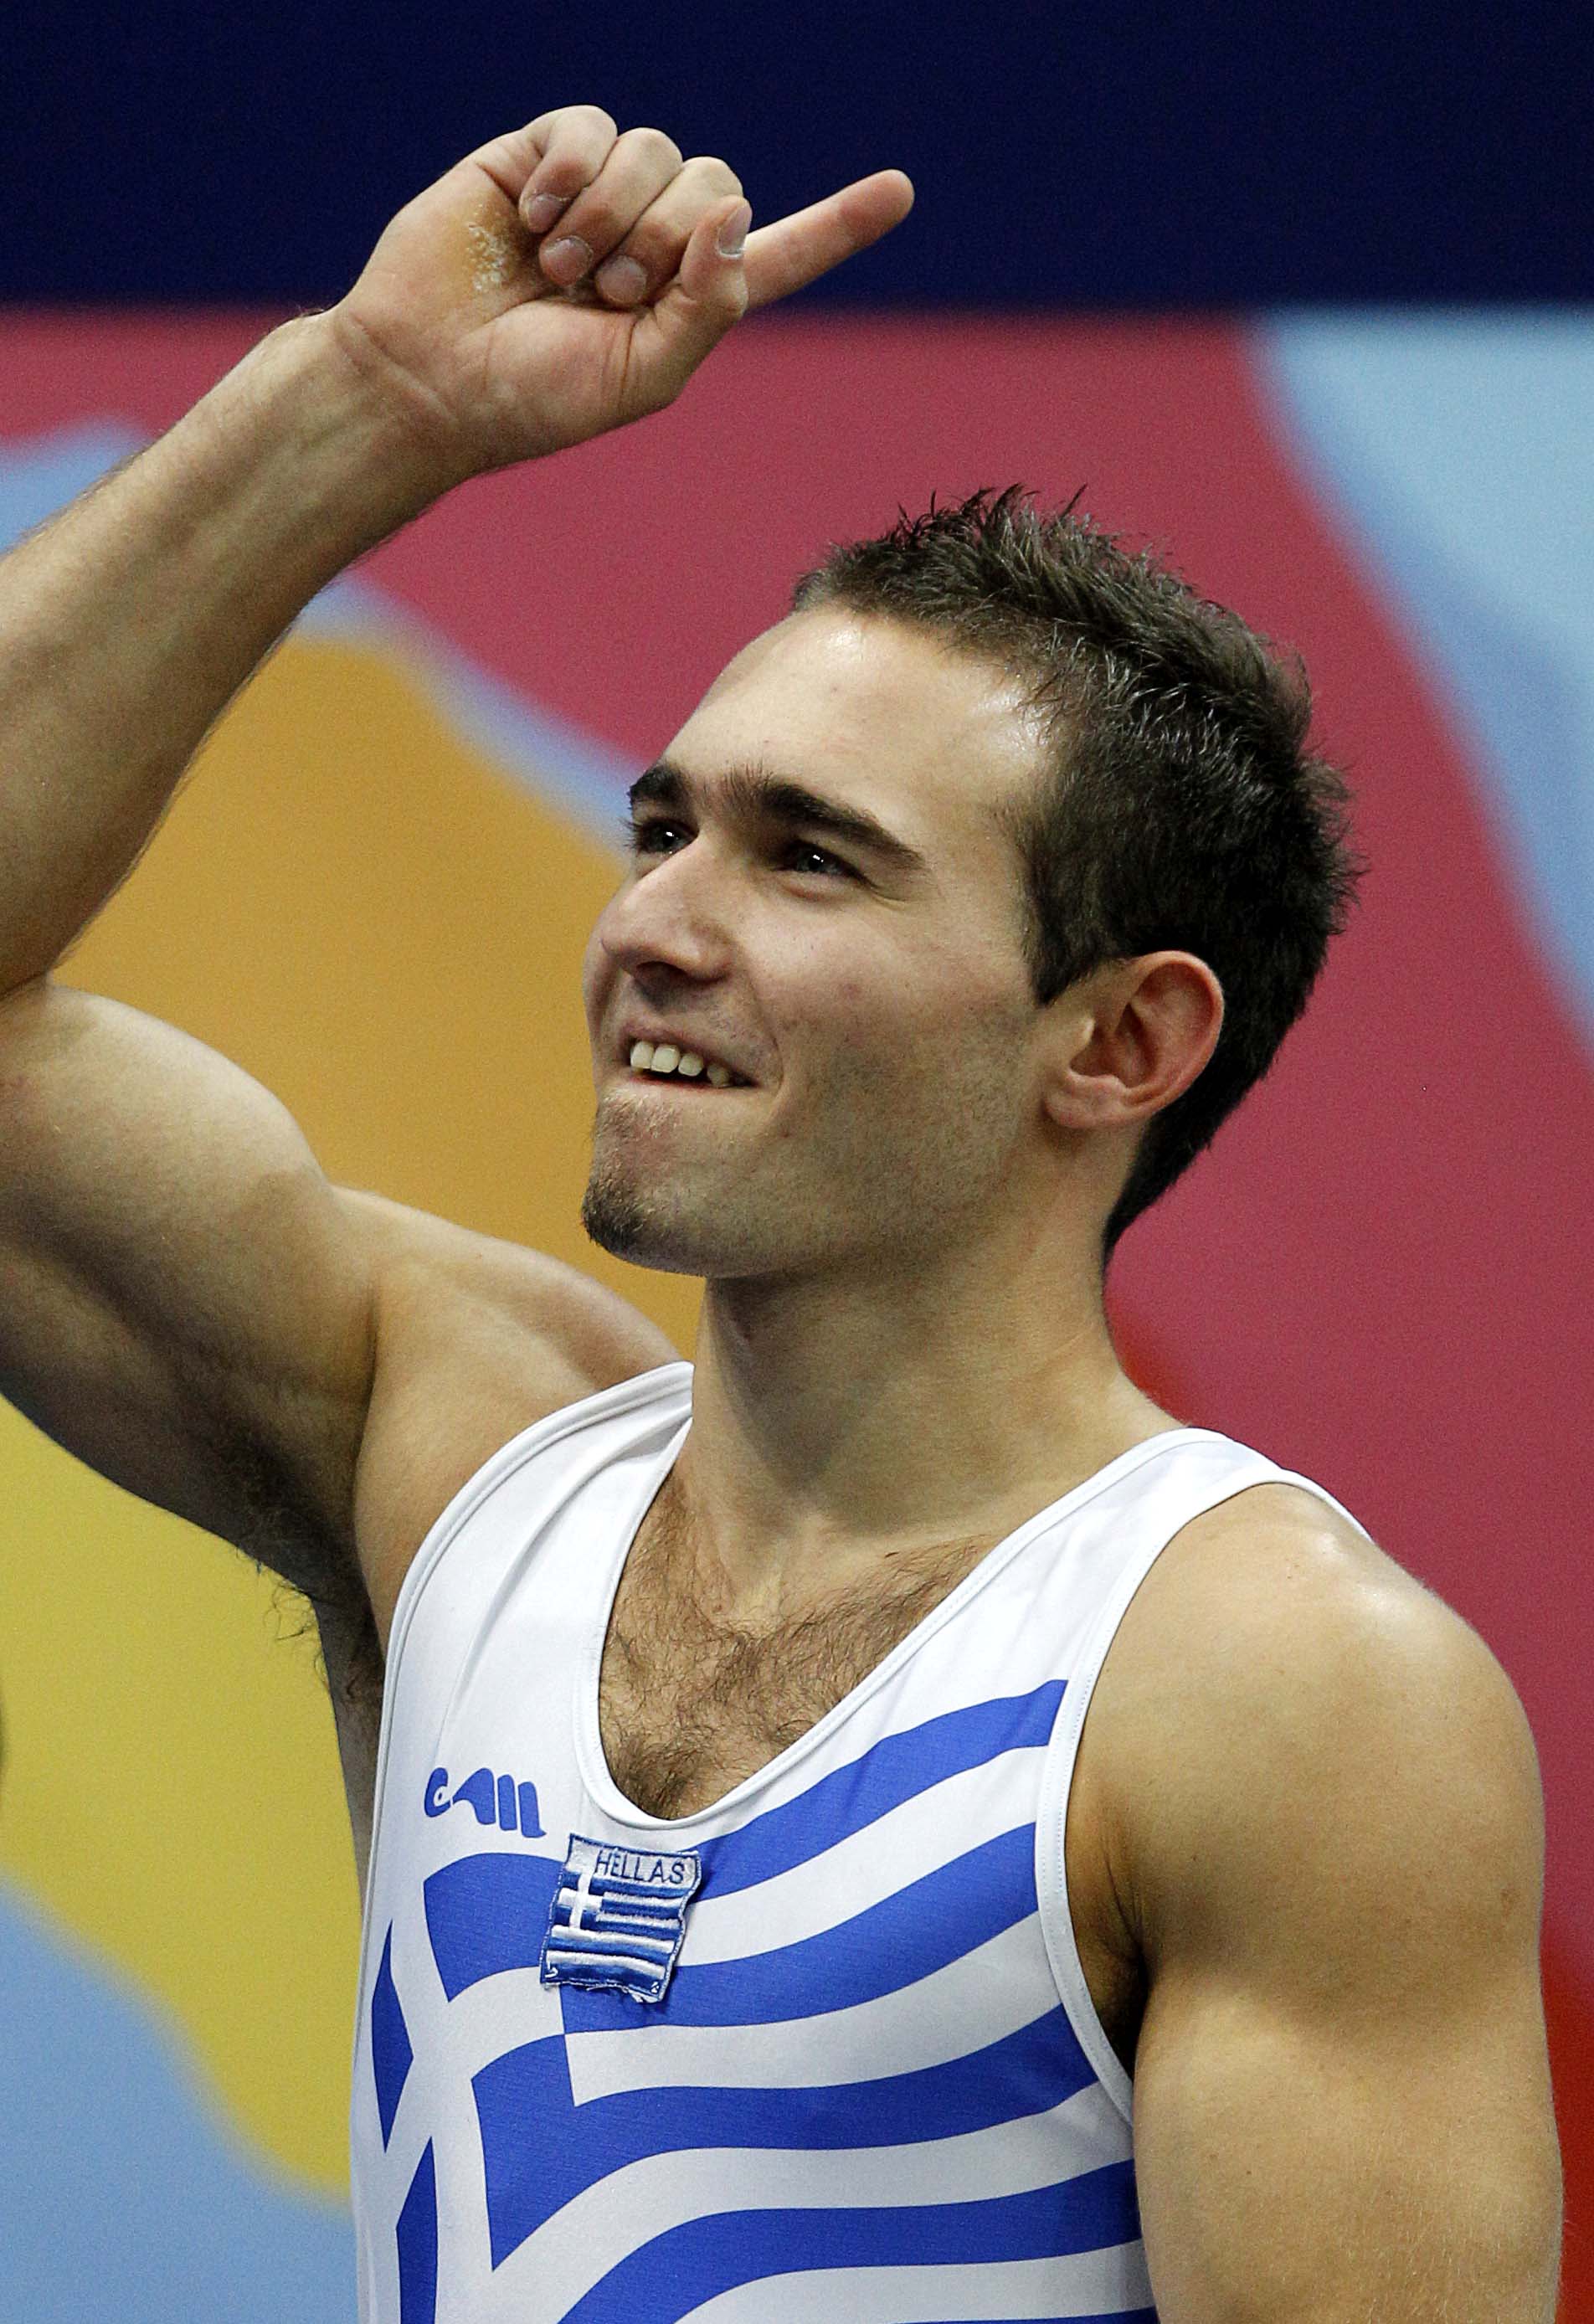 Χρυσοί οι έλληνες γυμναστές!